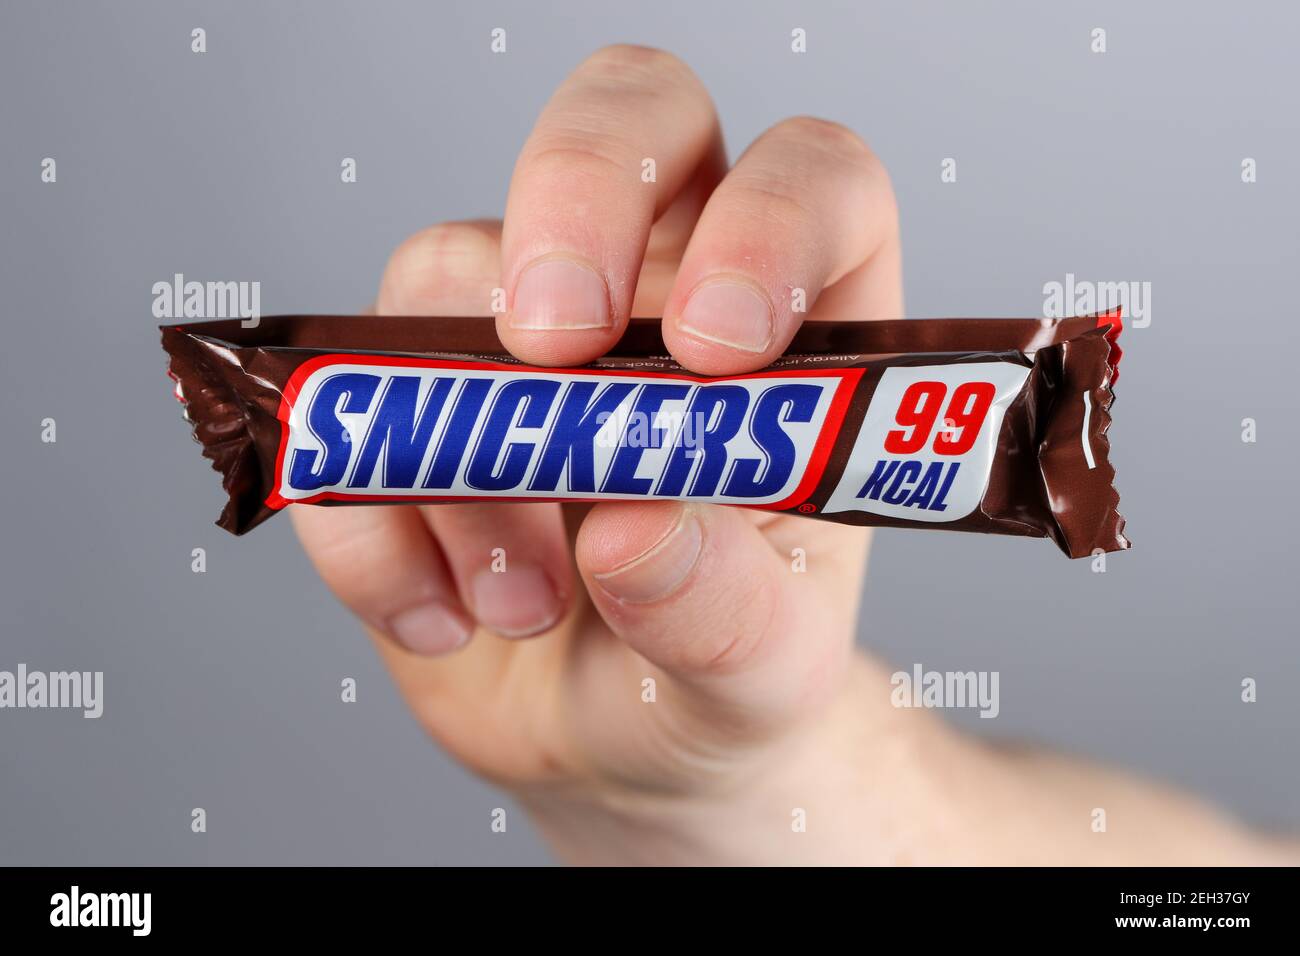 Kleine kalorienarme Mars und Snickers Schokolade Bars, die sind Unter 100 Kalorien Stockfoto